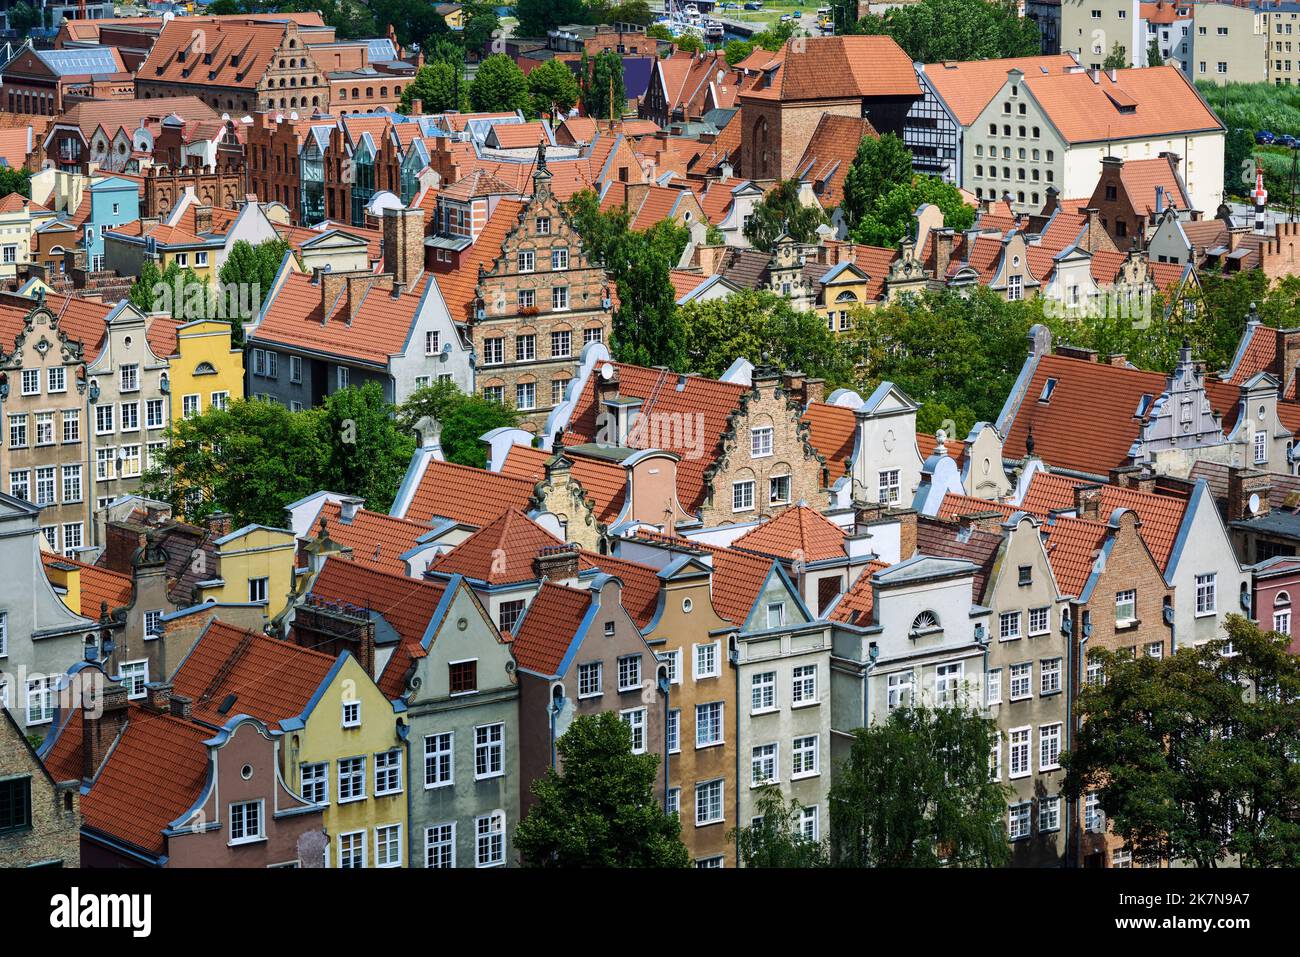 Vue sur les toits de tuiles rouges des maisons colorées de la vieille ville historique de Gdansk, Pologne Banque D'Images